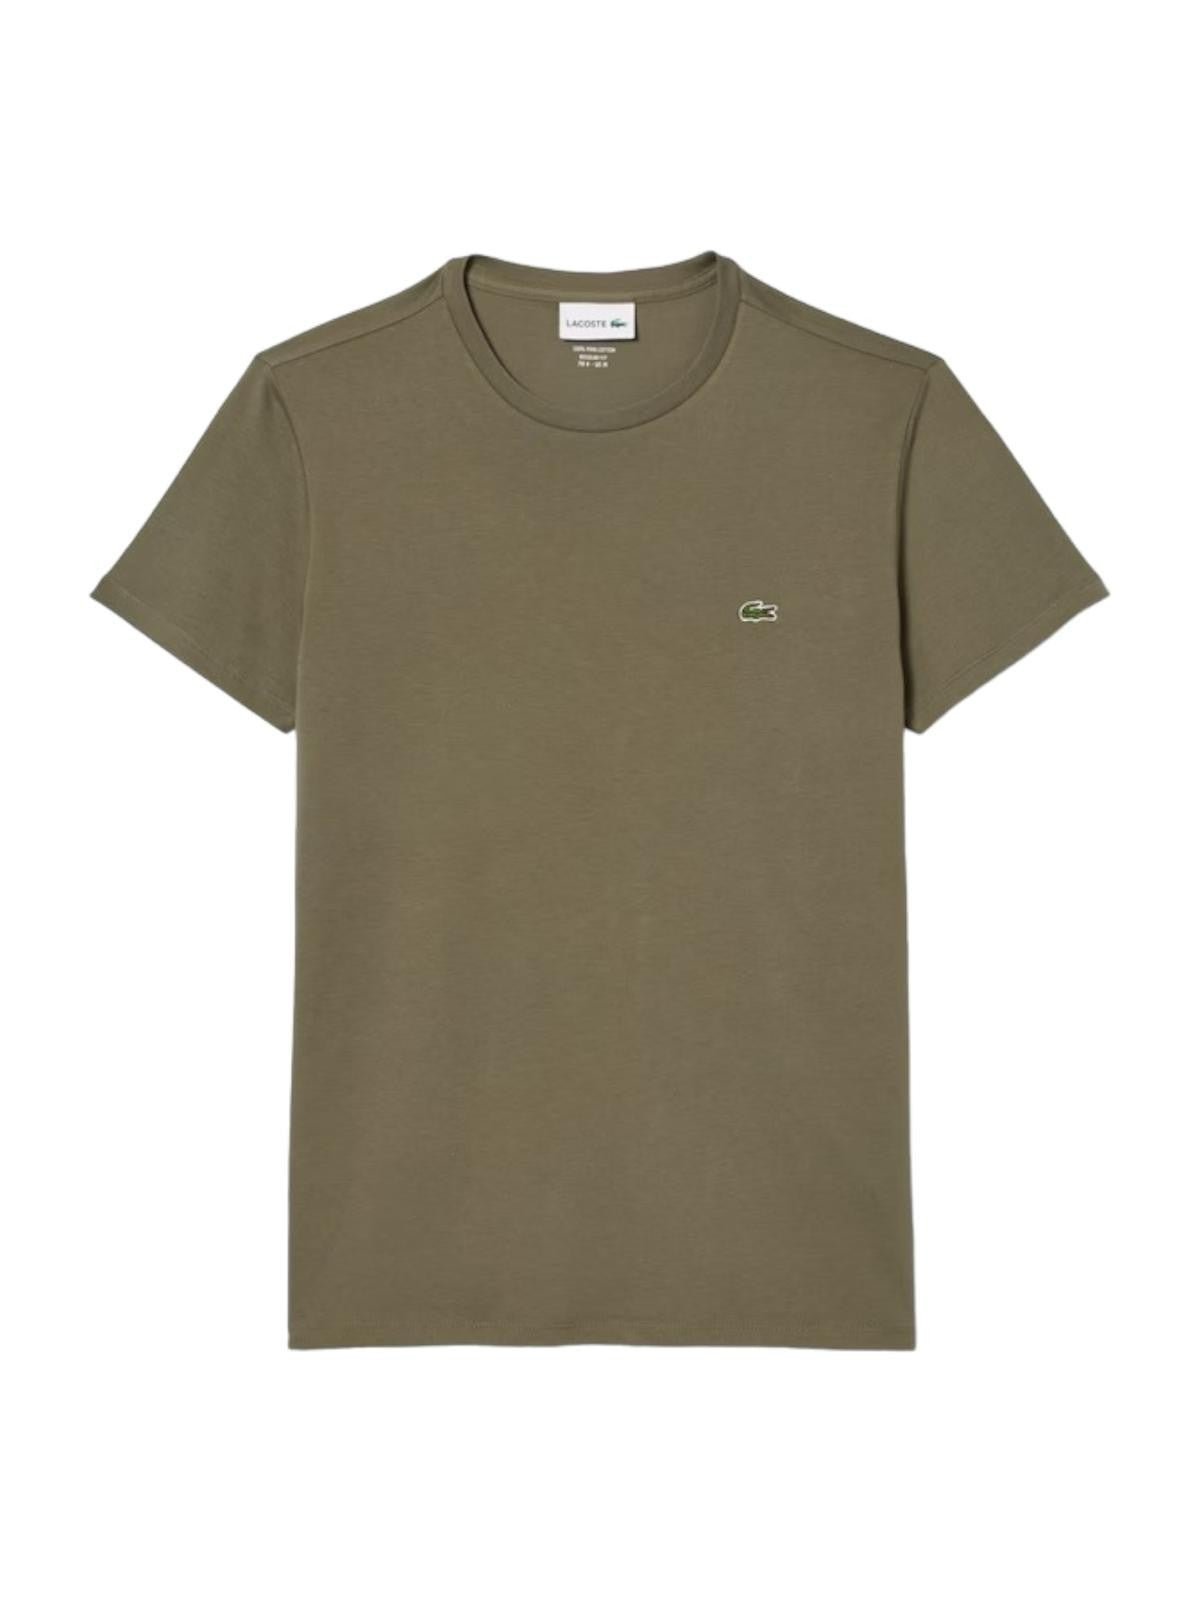 LACOSTE T-Shirt e Polo Uomo  TH6709 316 Verde